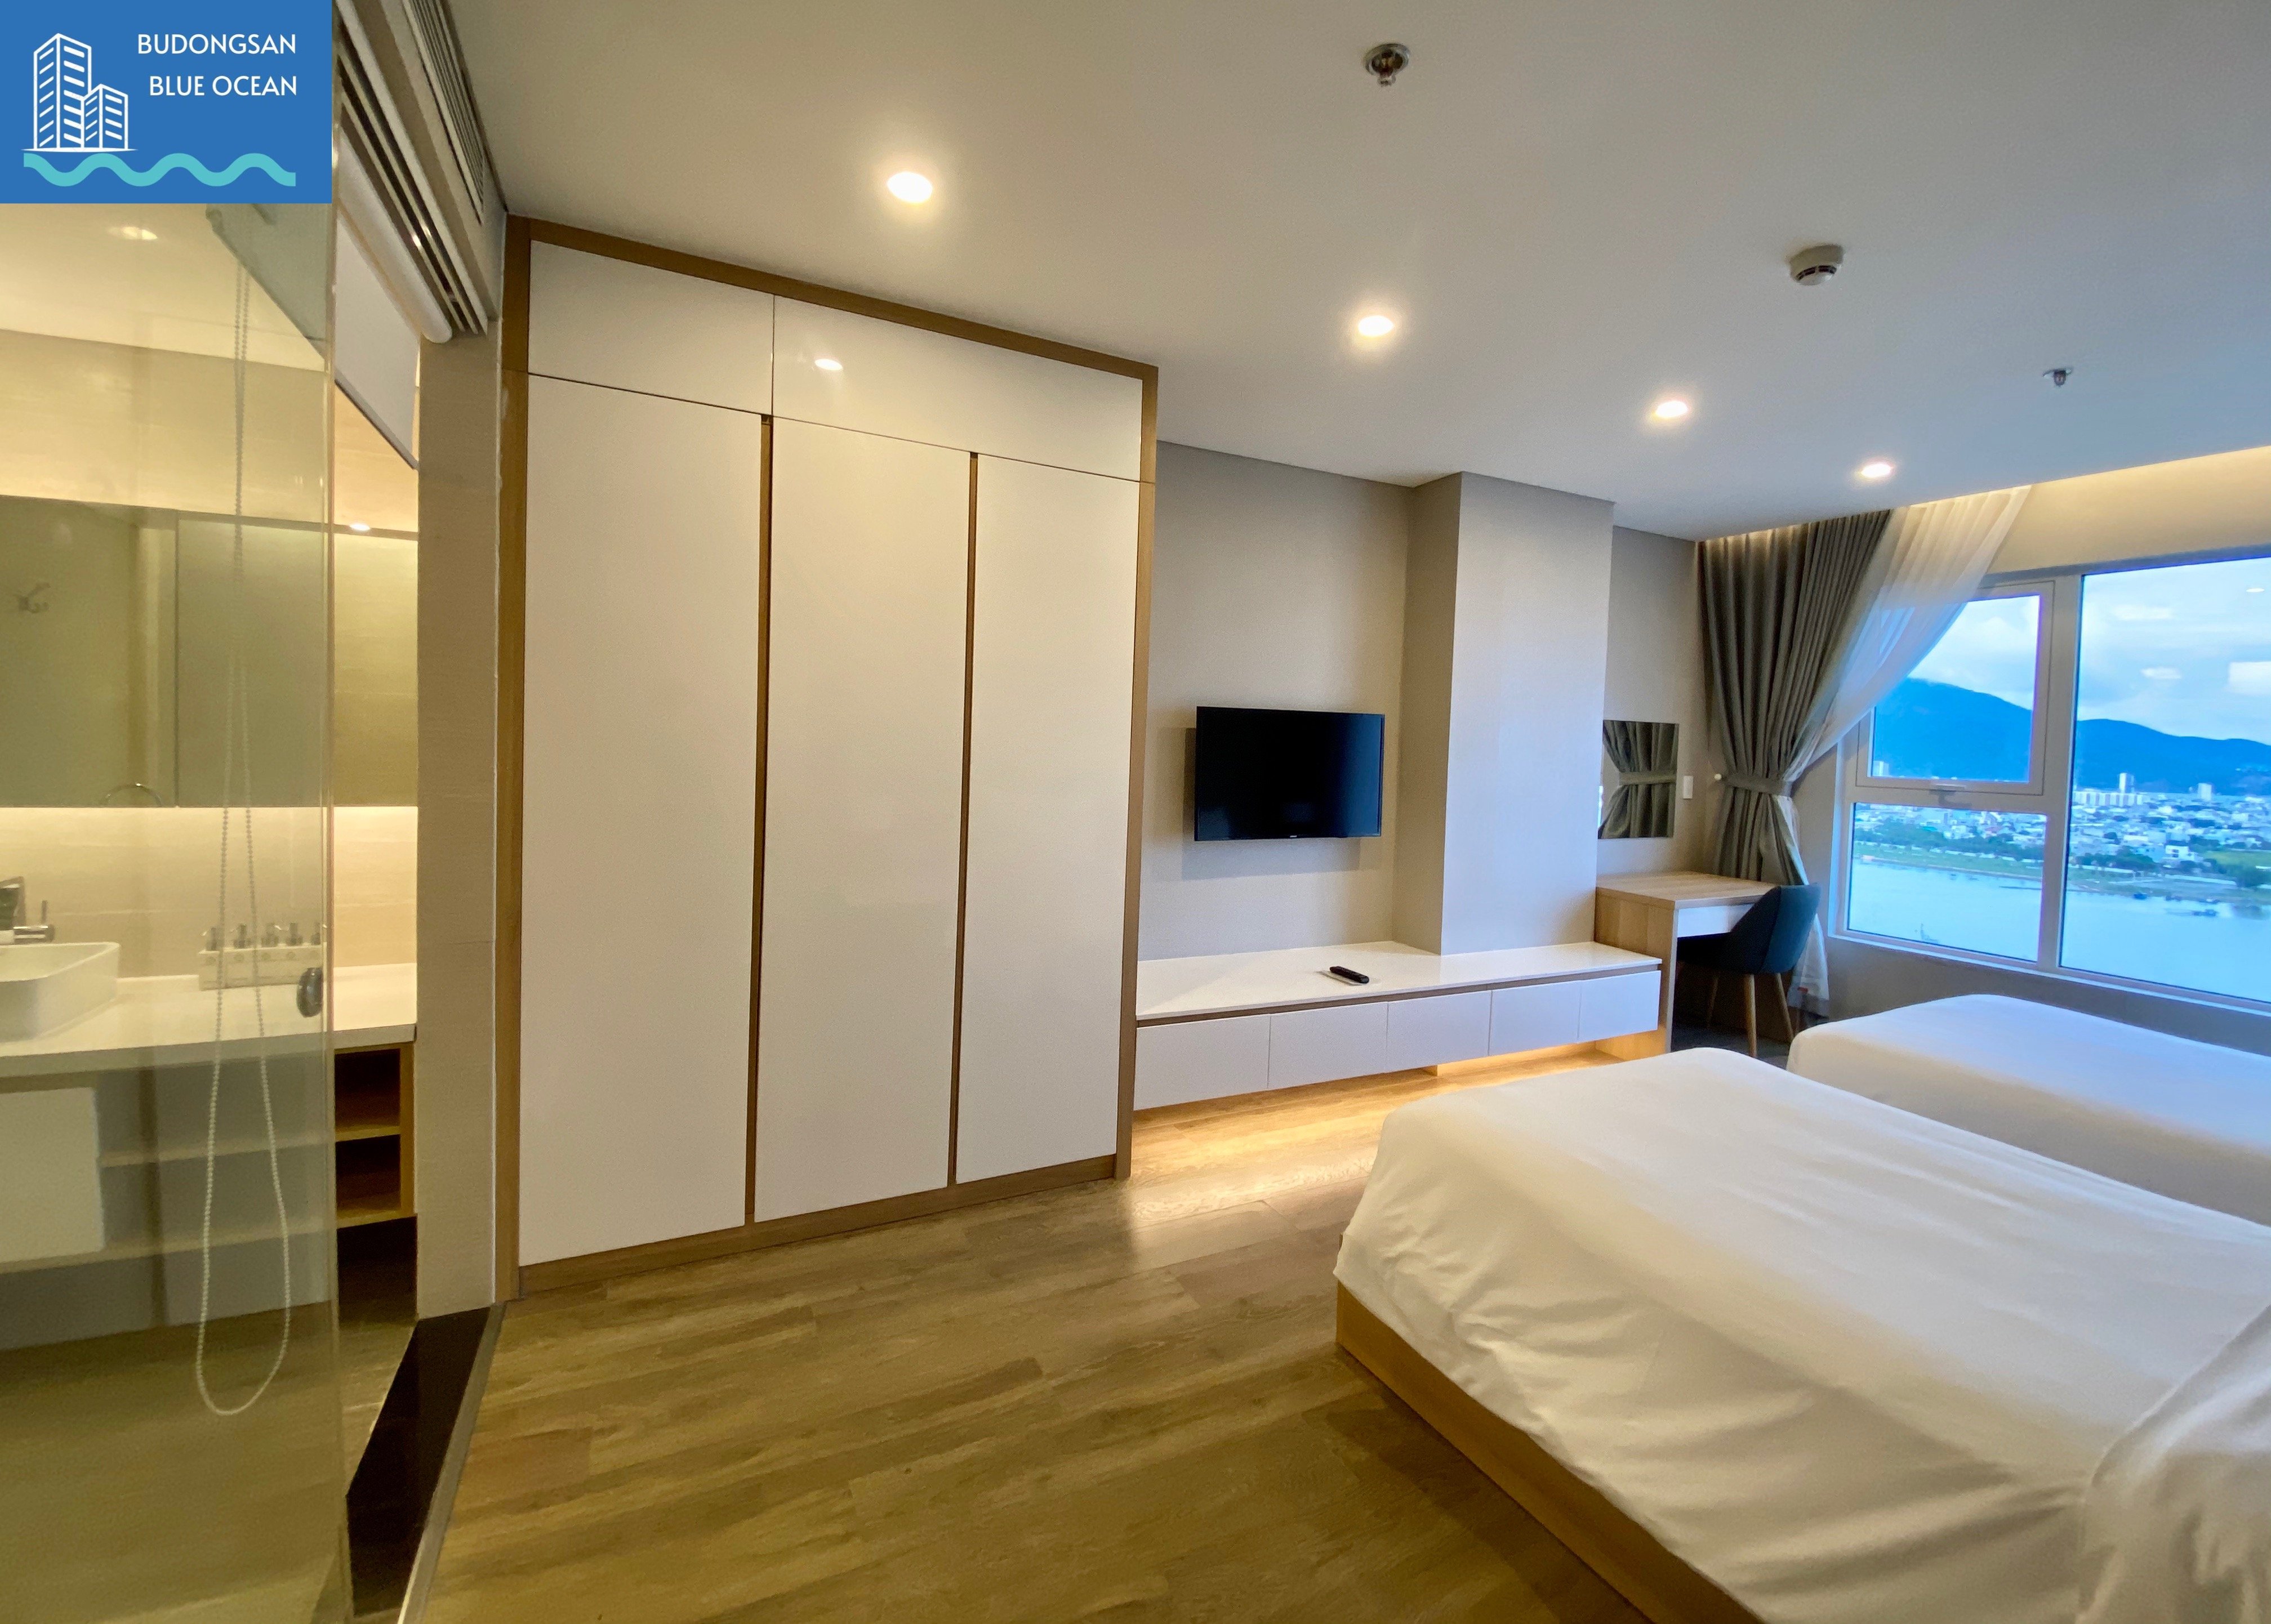 Fhome Zen bán giá chỉ 2,35 tỷ căn hộ 1PN view cực đẹp Budongsan Biển Xanh 5